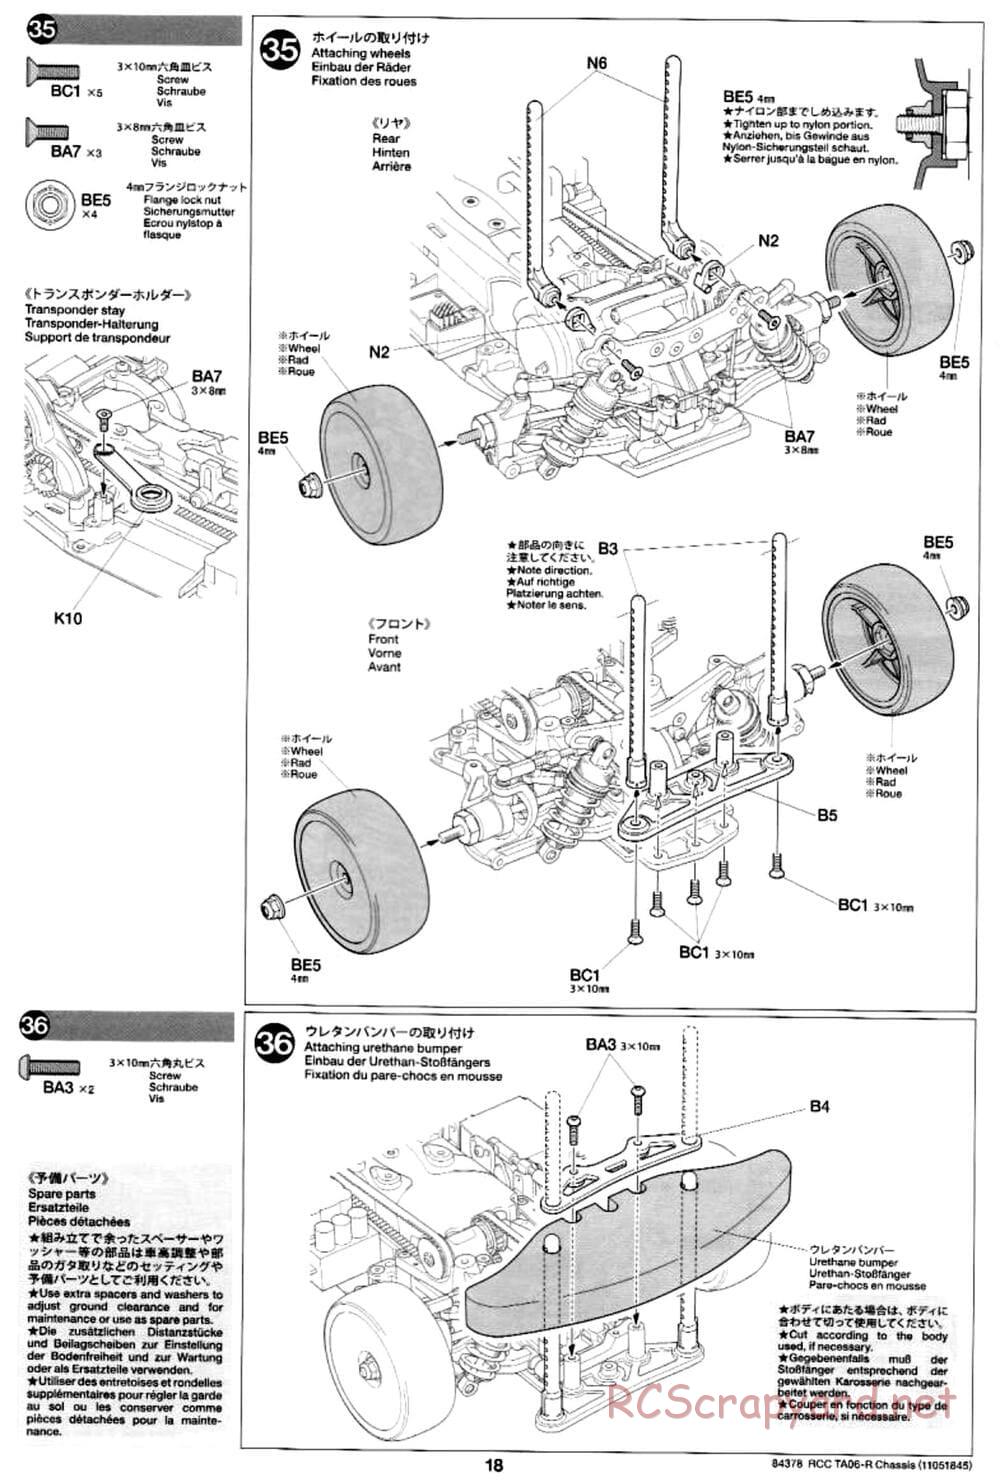 Tamiya - TA06-R Chassis - Manual - Page 18